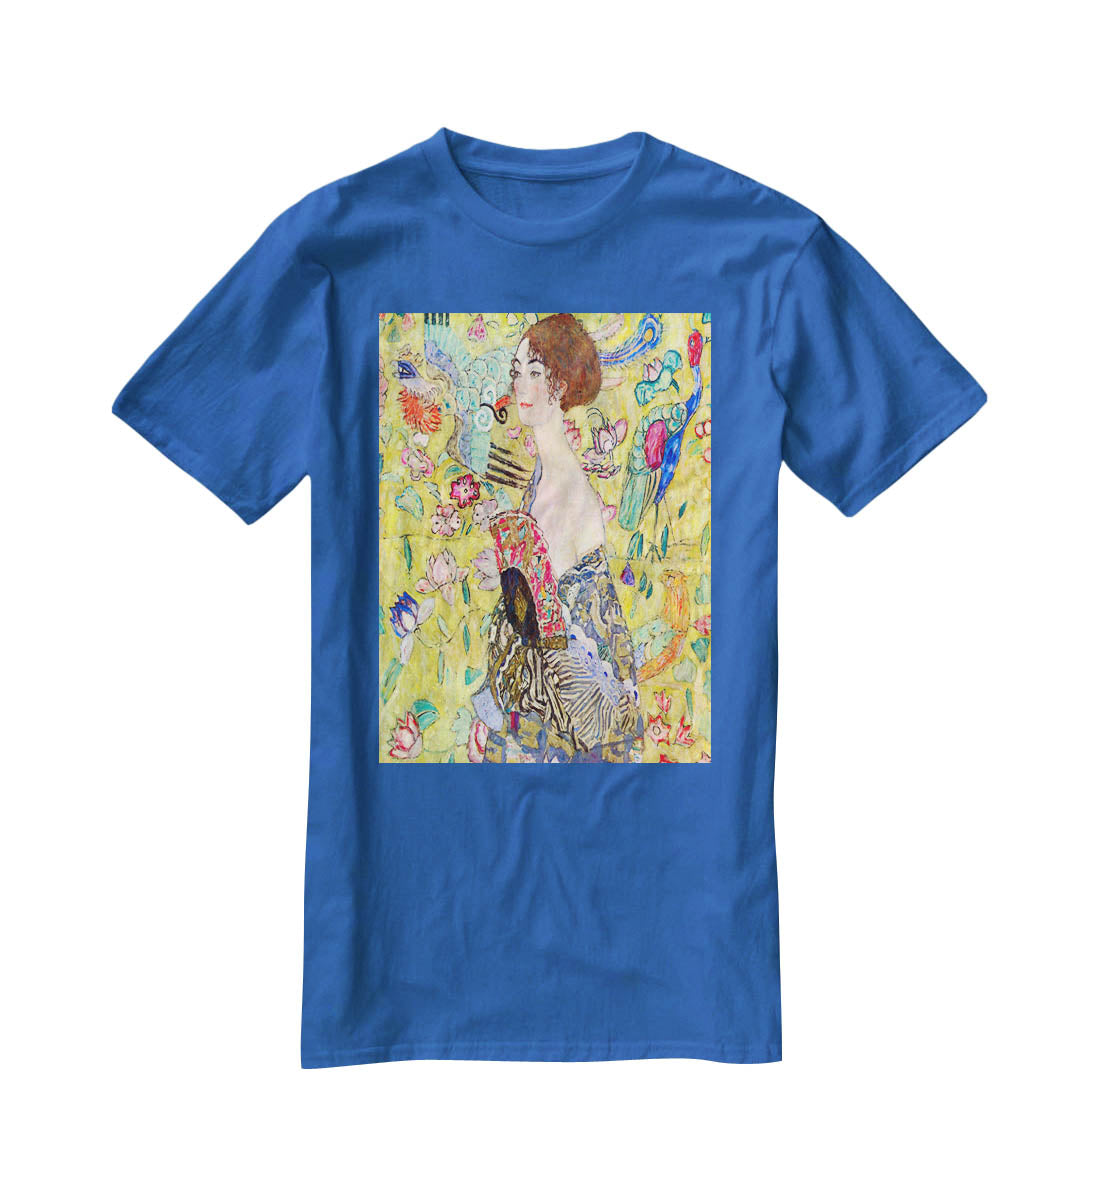 Lady with fan by Klimt T-Shirt - Canvas Art Rocks - 2